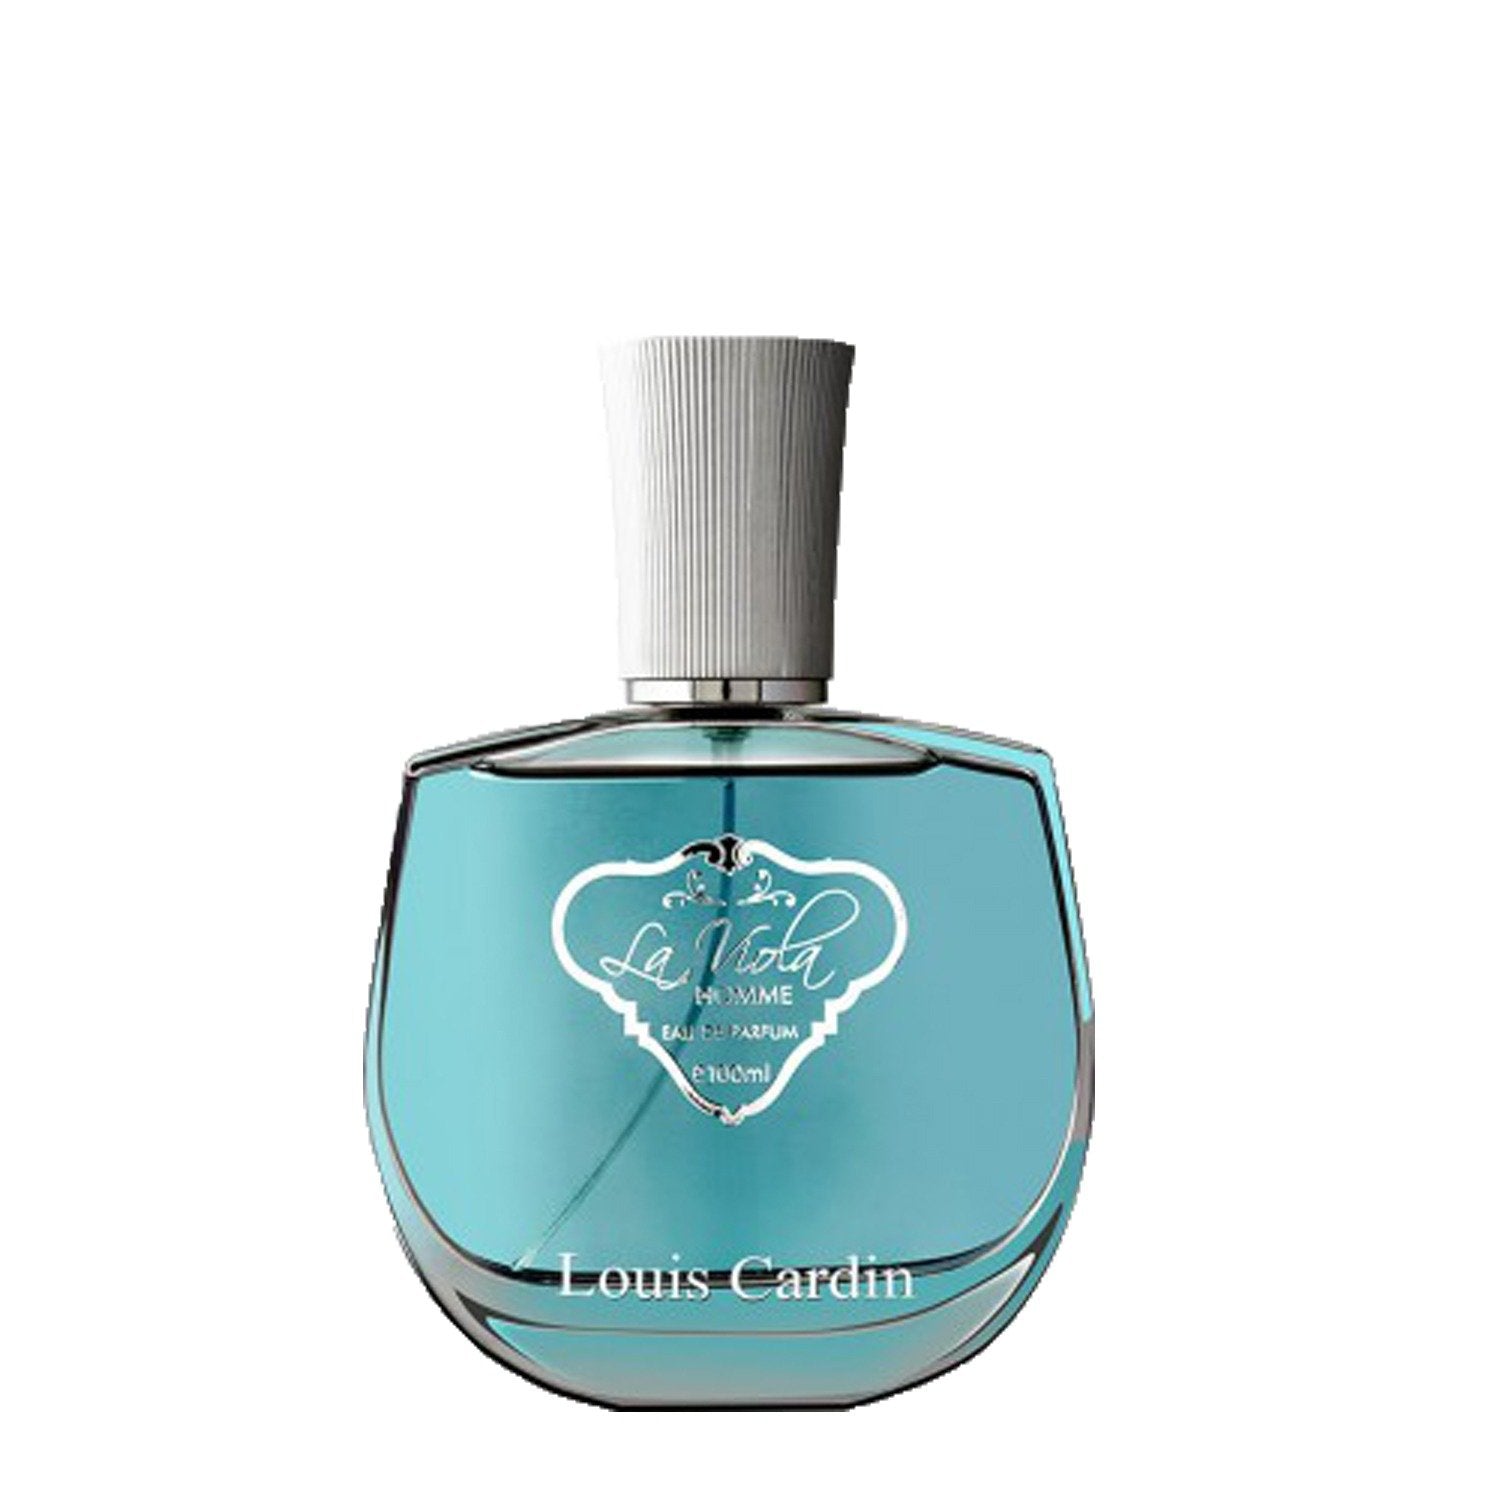 Louis Cardin Credible Noir Eau de Parfum for Men 100 ml